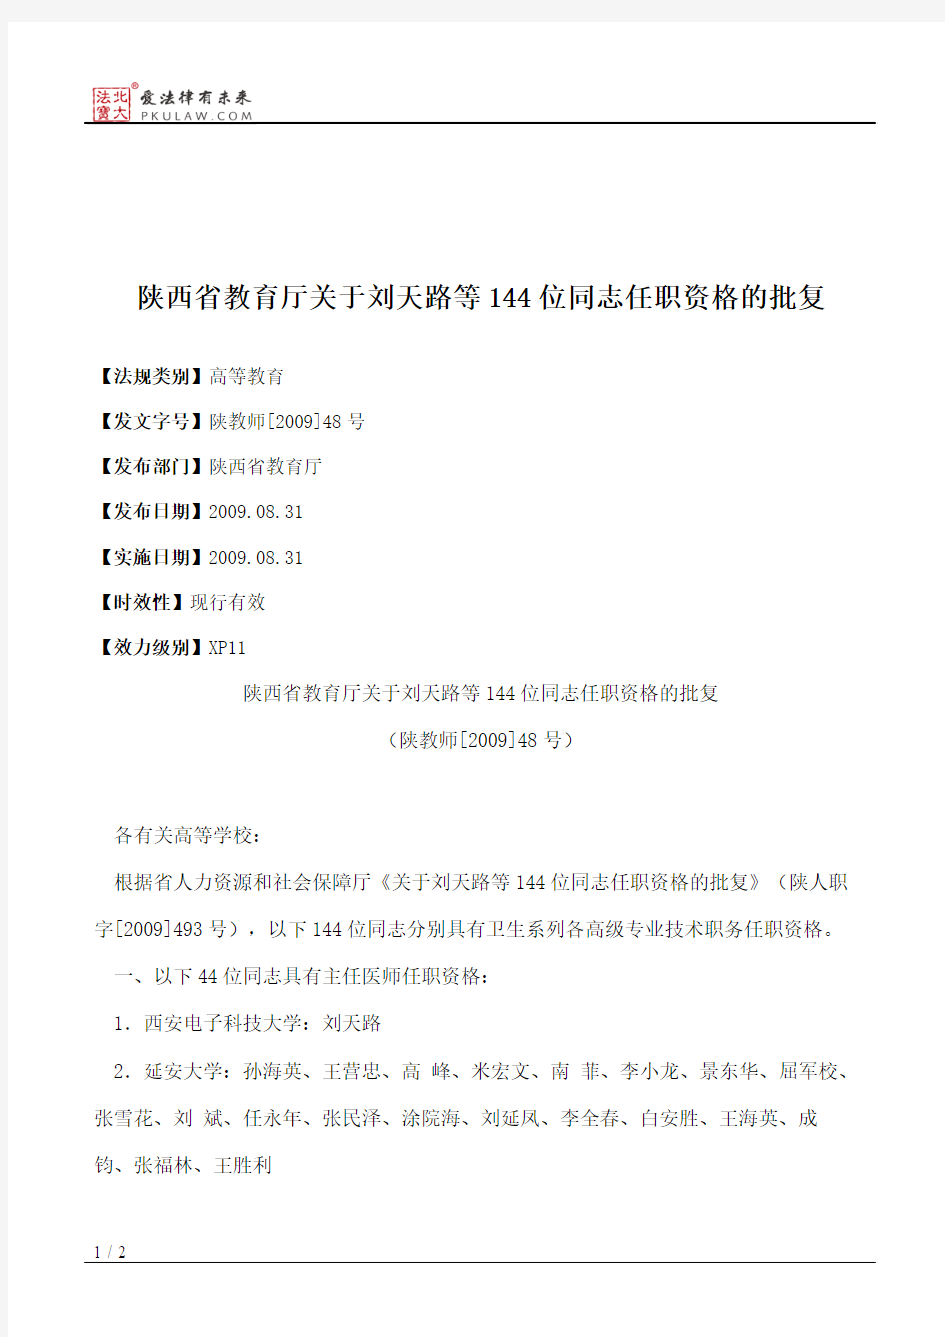 陕西省教育厅关于刘天路等144位同志任职资格的批复